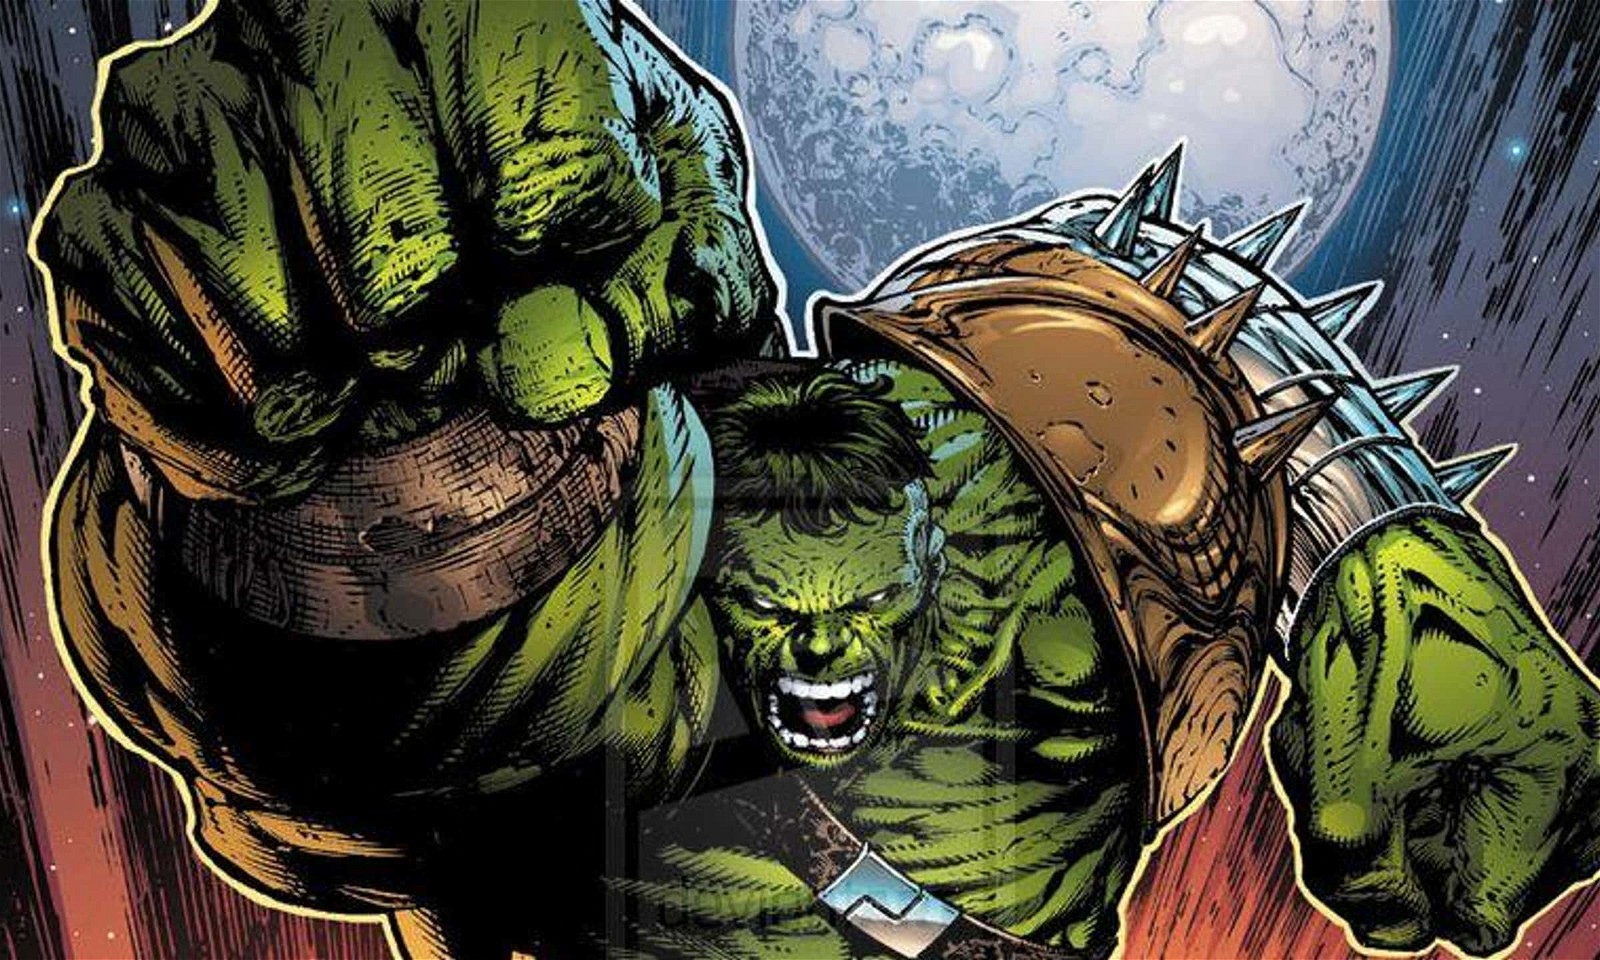 World War Hulk in the Marvel Comics